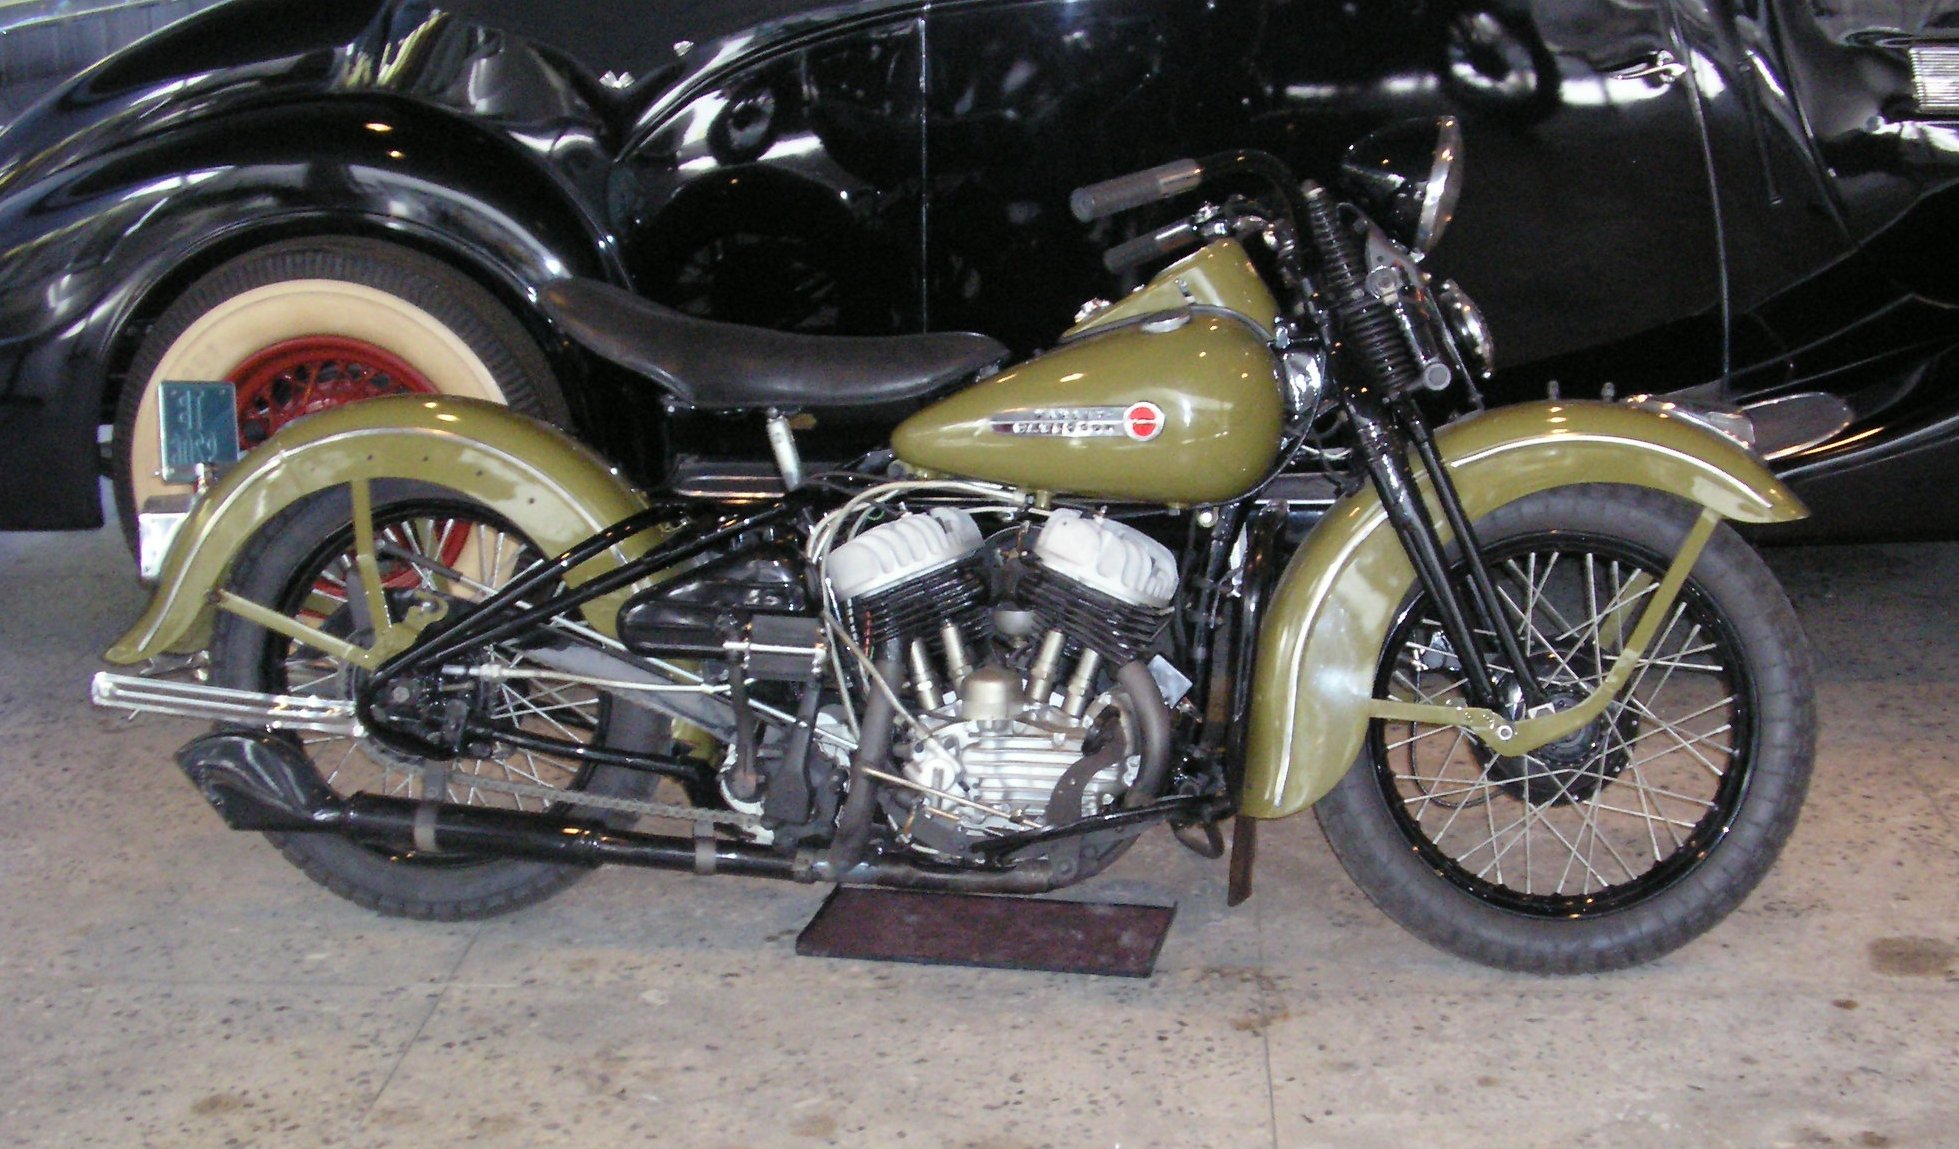 harley, Davidson, Motorbike, Bike, Motorcycle Wallpaper